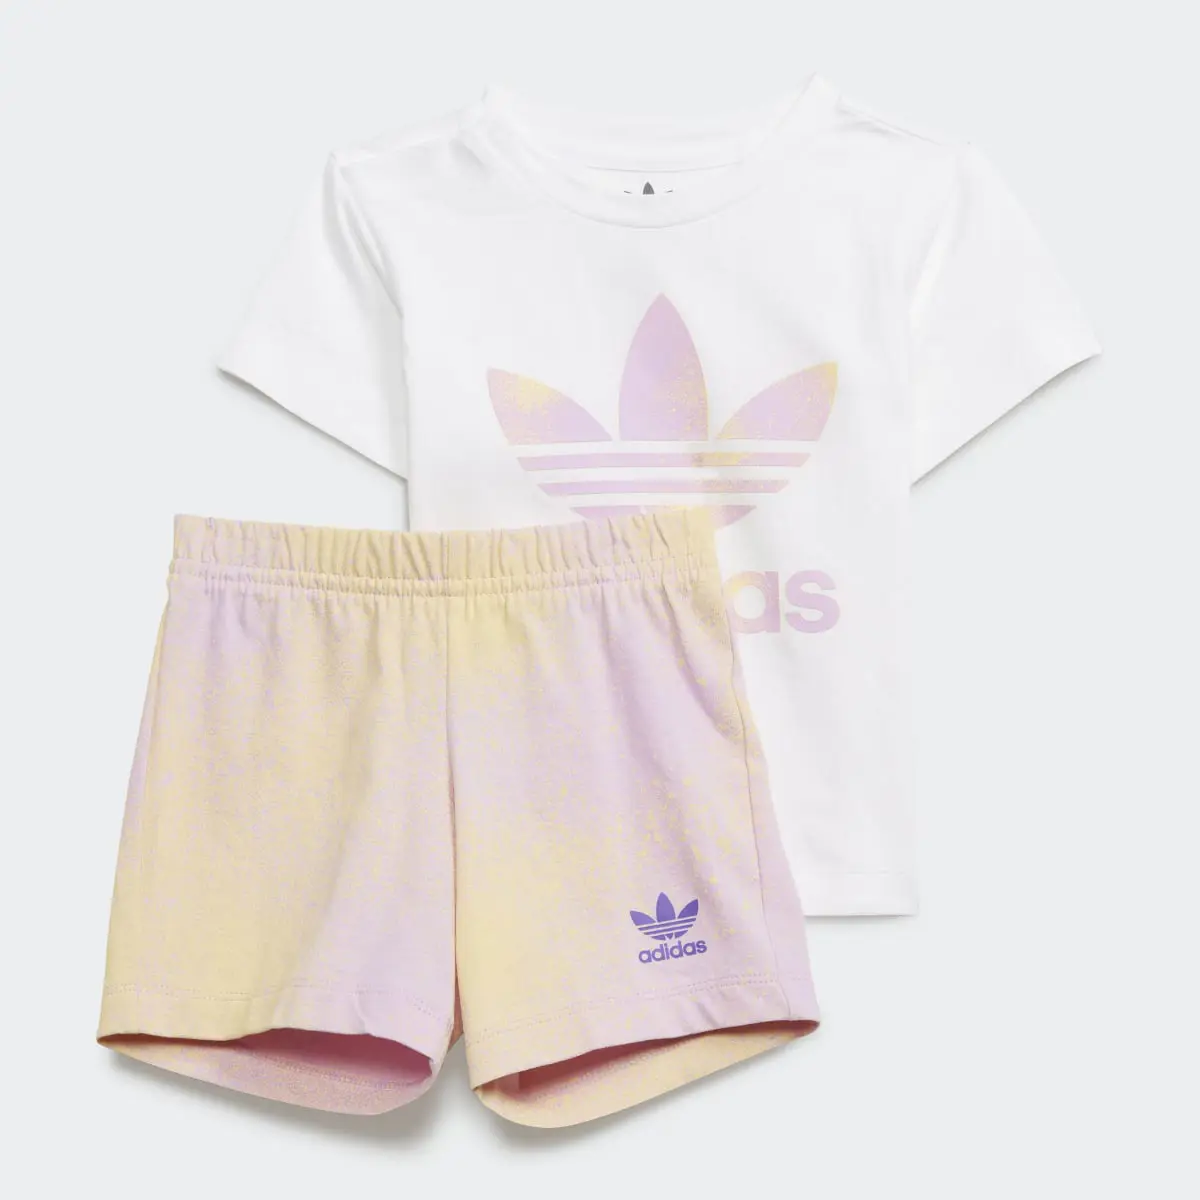 Adidas Graphic Logo Shorts and Tee Set. 2